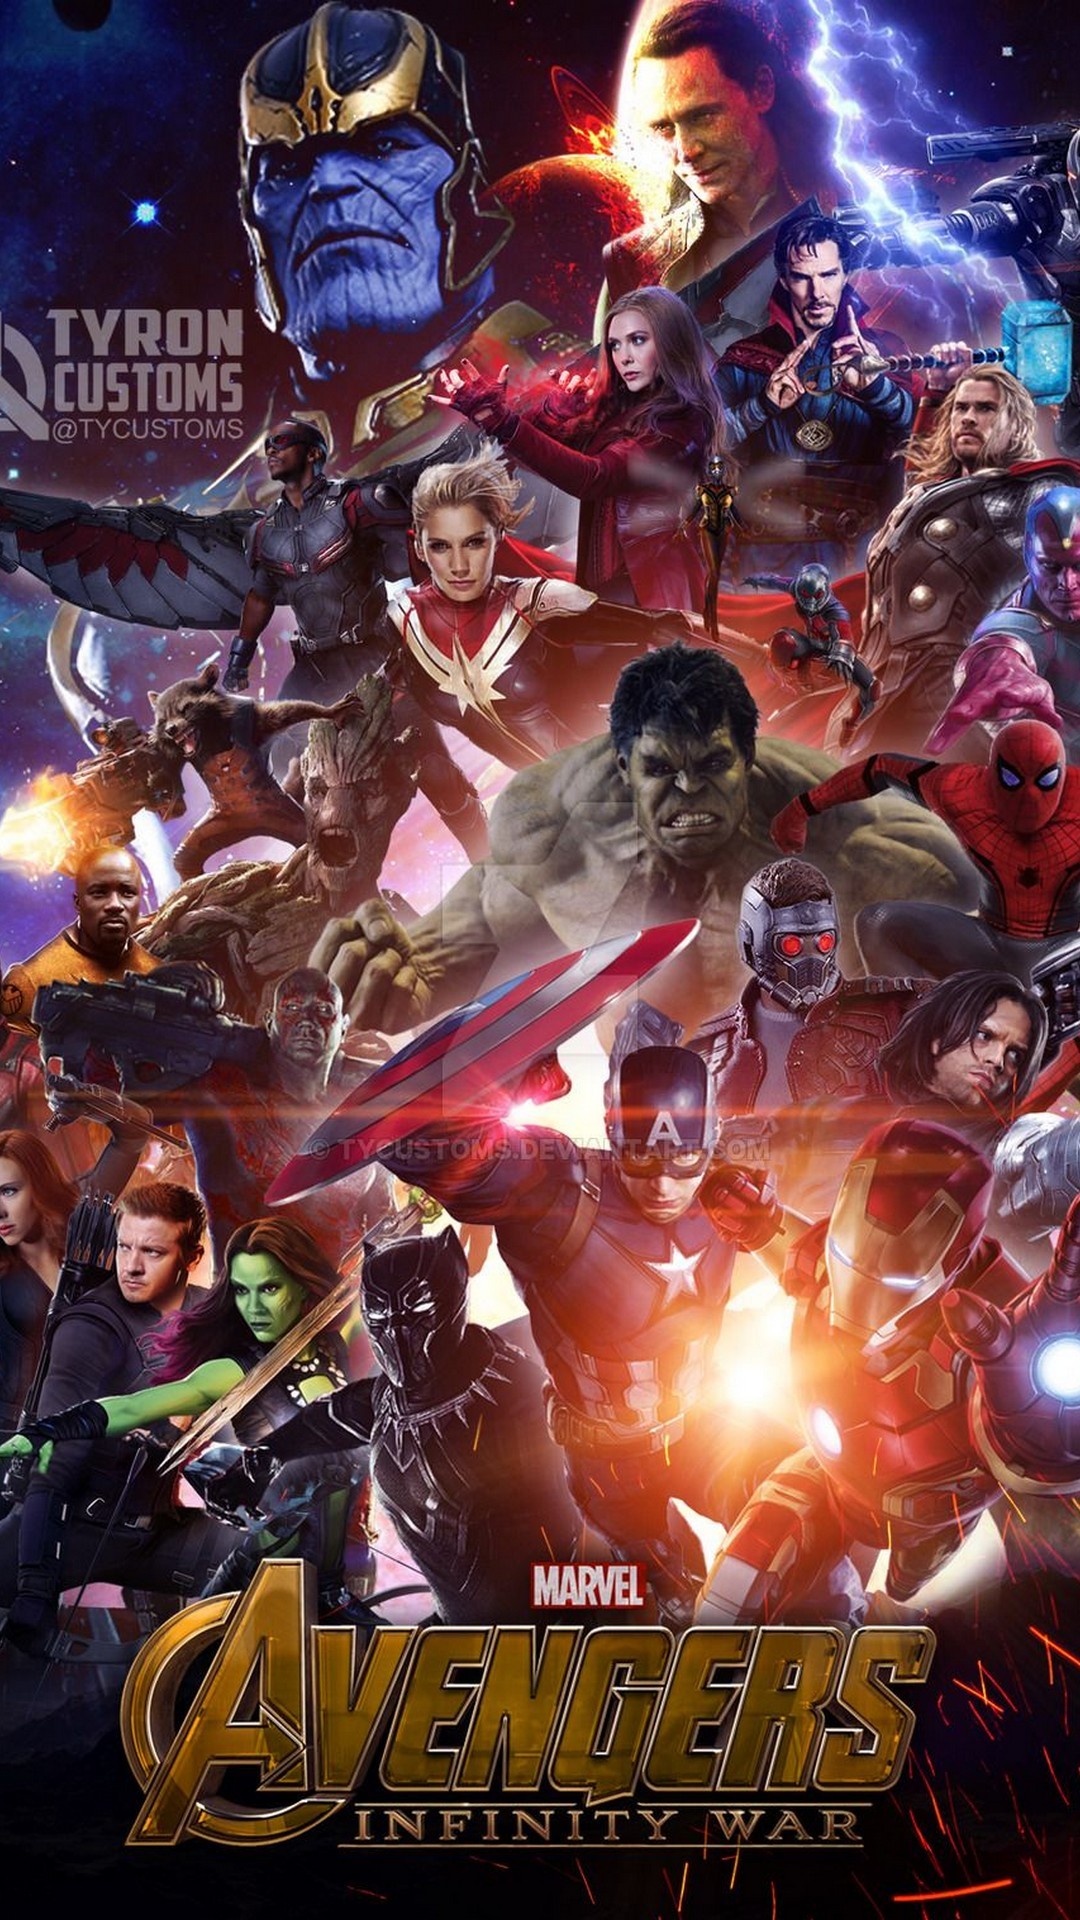 Wallpaper Avengers Infinity War iPhone resolution 1080x1920